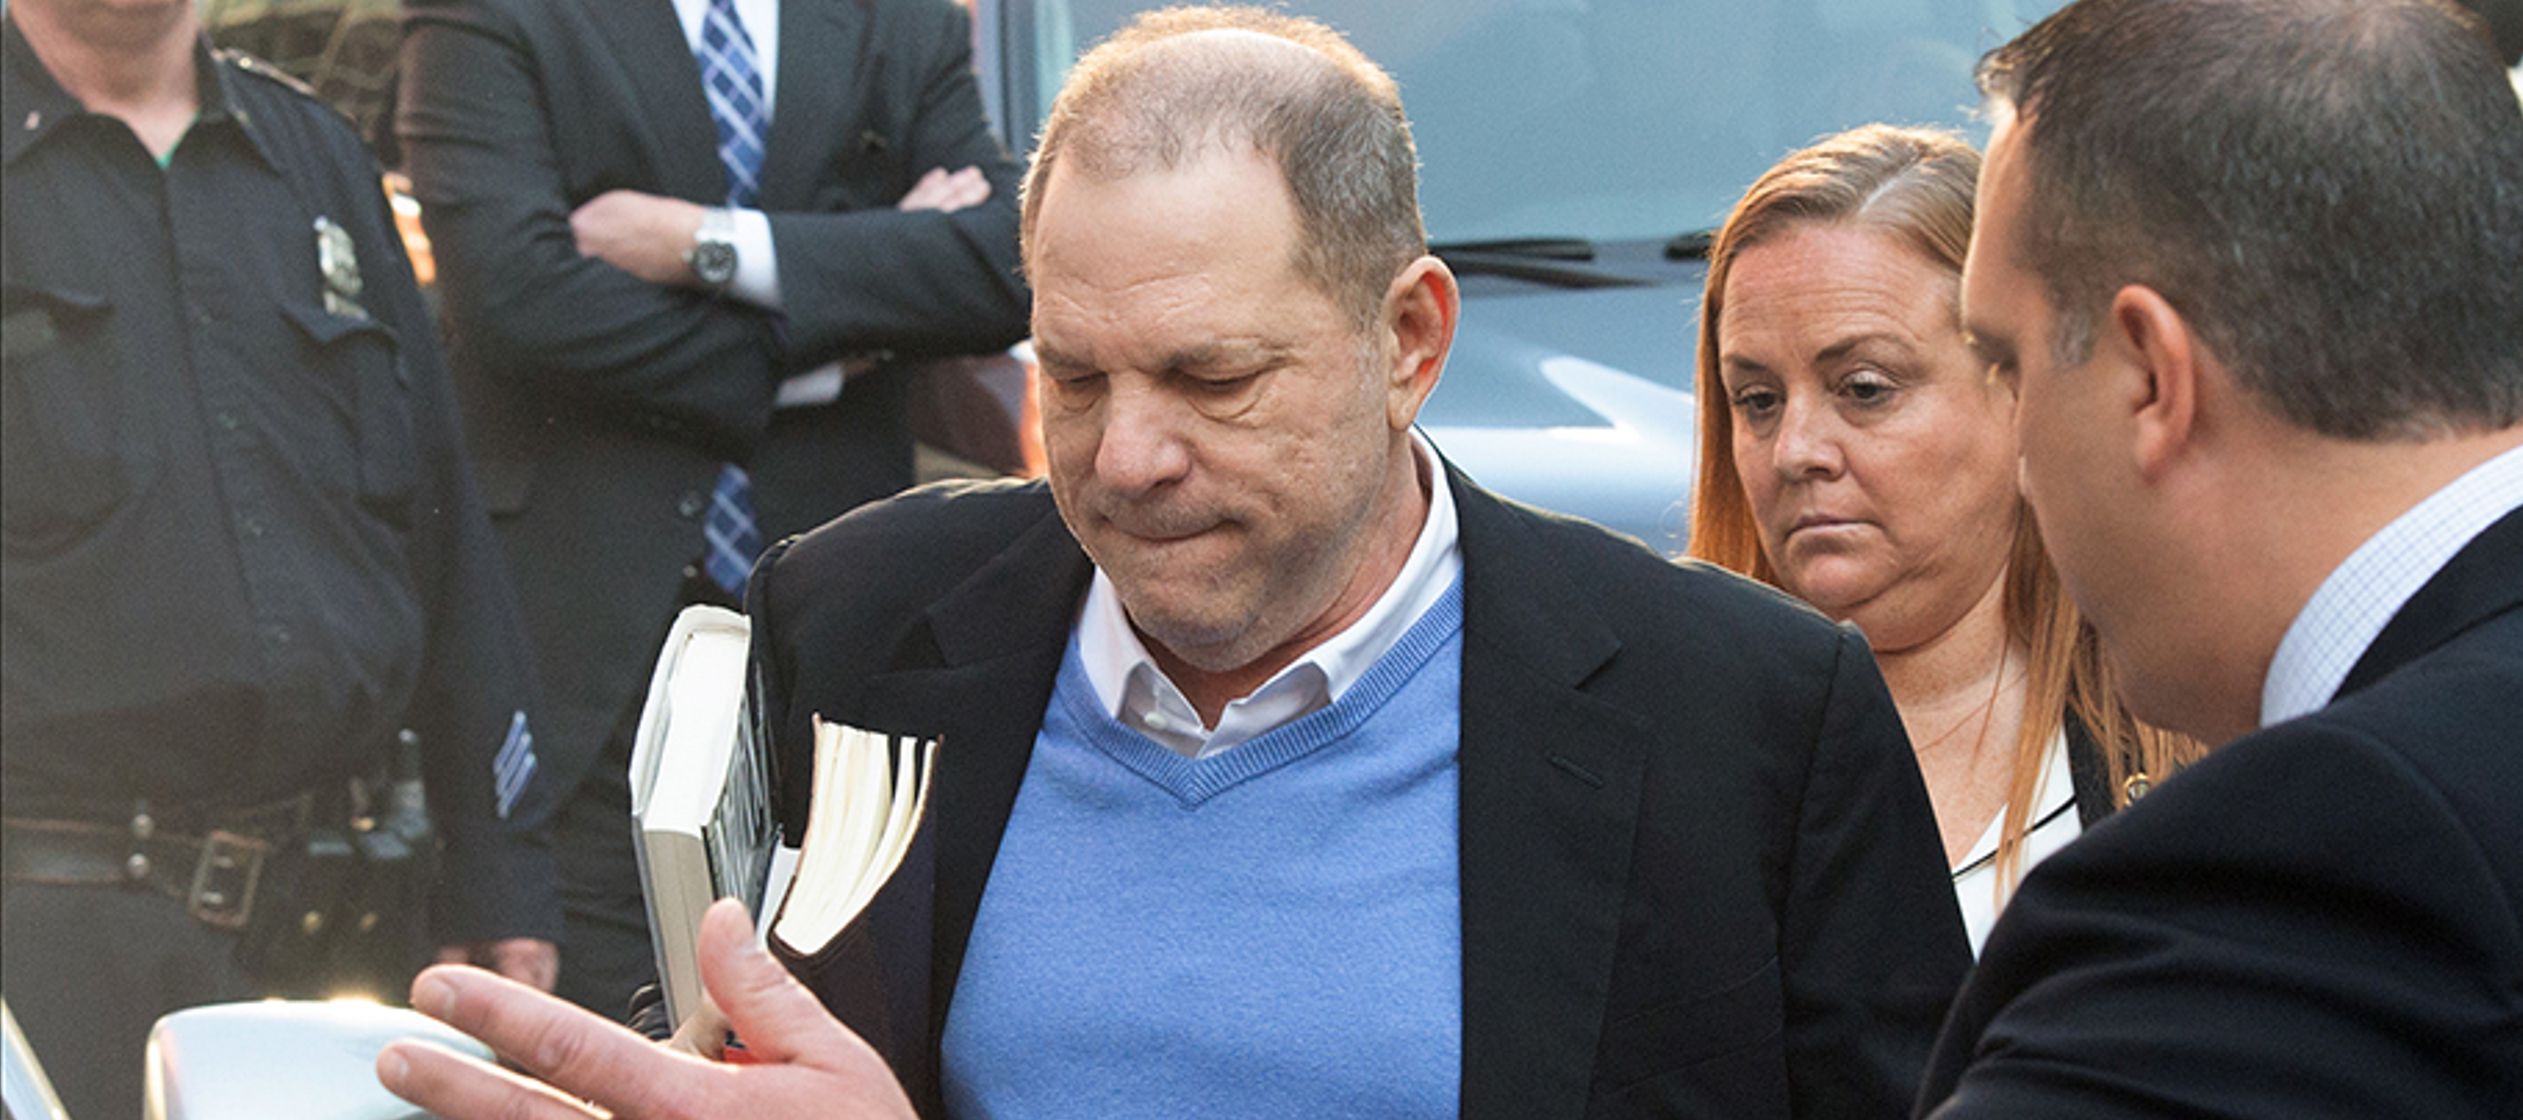 La denuncia presentada por Loman, que en su escrito asegura haber sido violada por Weinstein,...